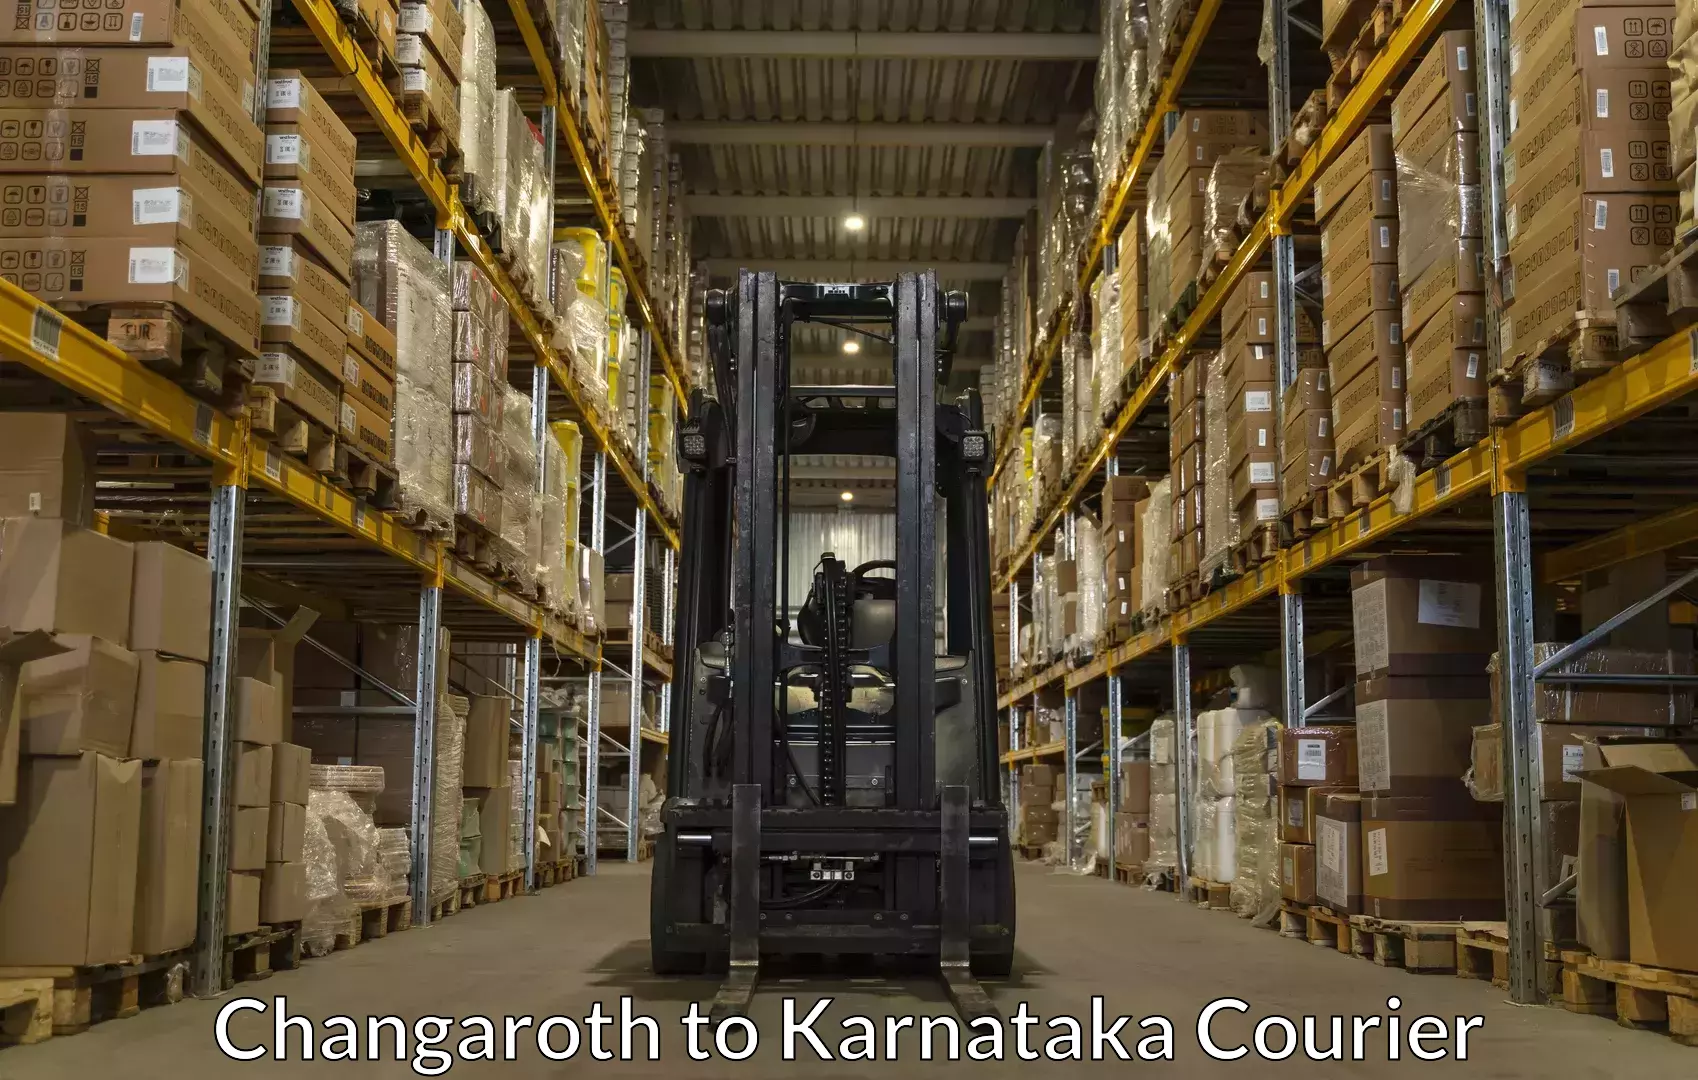 Furniture moving experts Changaroth to Dakshina Kannada